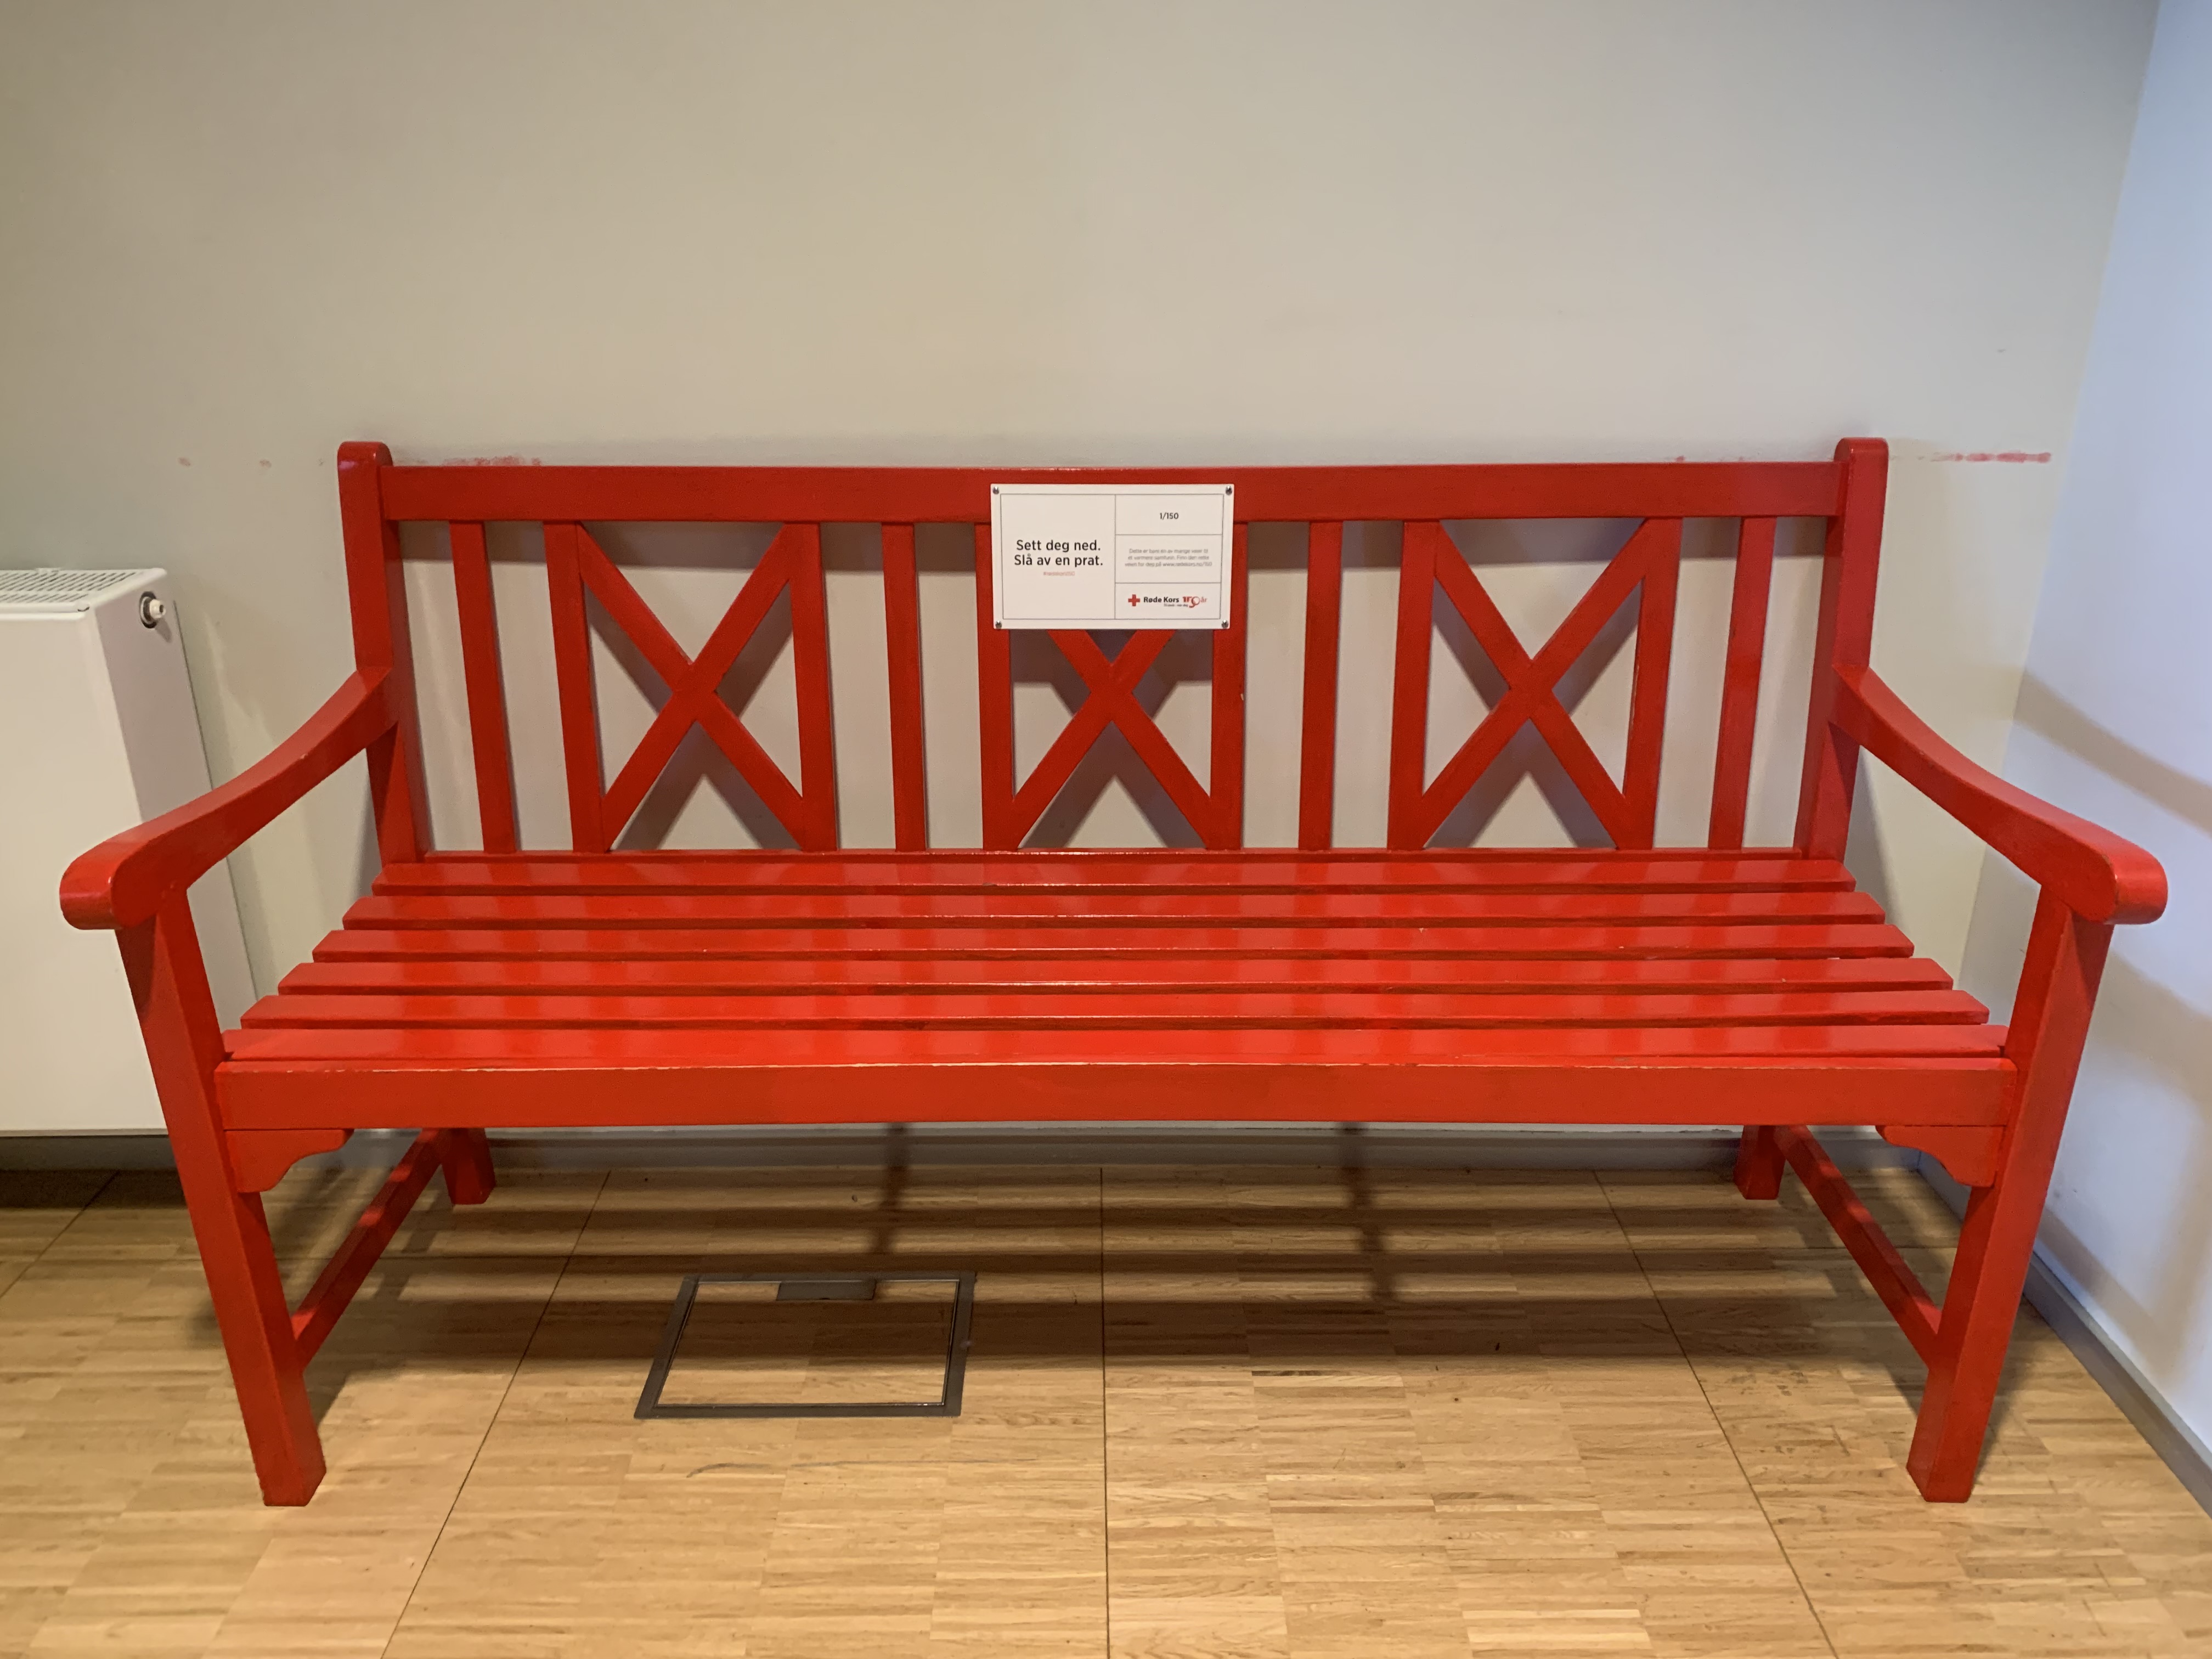 Røde Kors benken er ment å oppmuntre til å sette seg ned til en prat. Dette for å dempe ensomhetsfølelsen og for å se hverandre. (Foto: Dagrunn Grønbech)